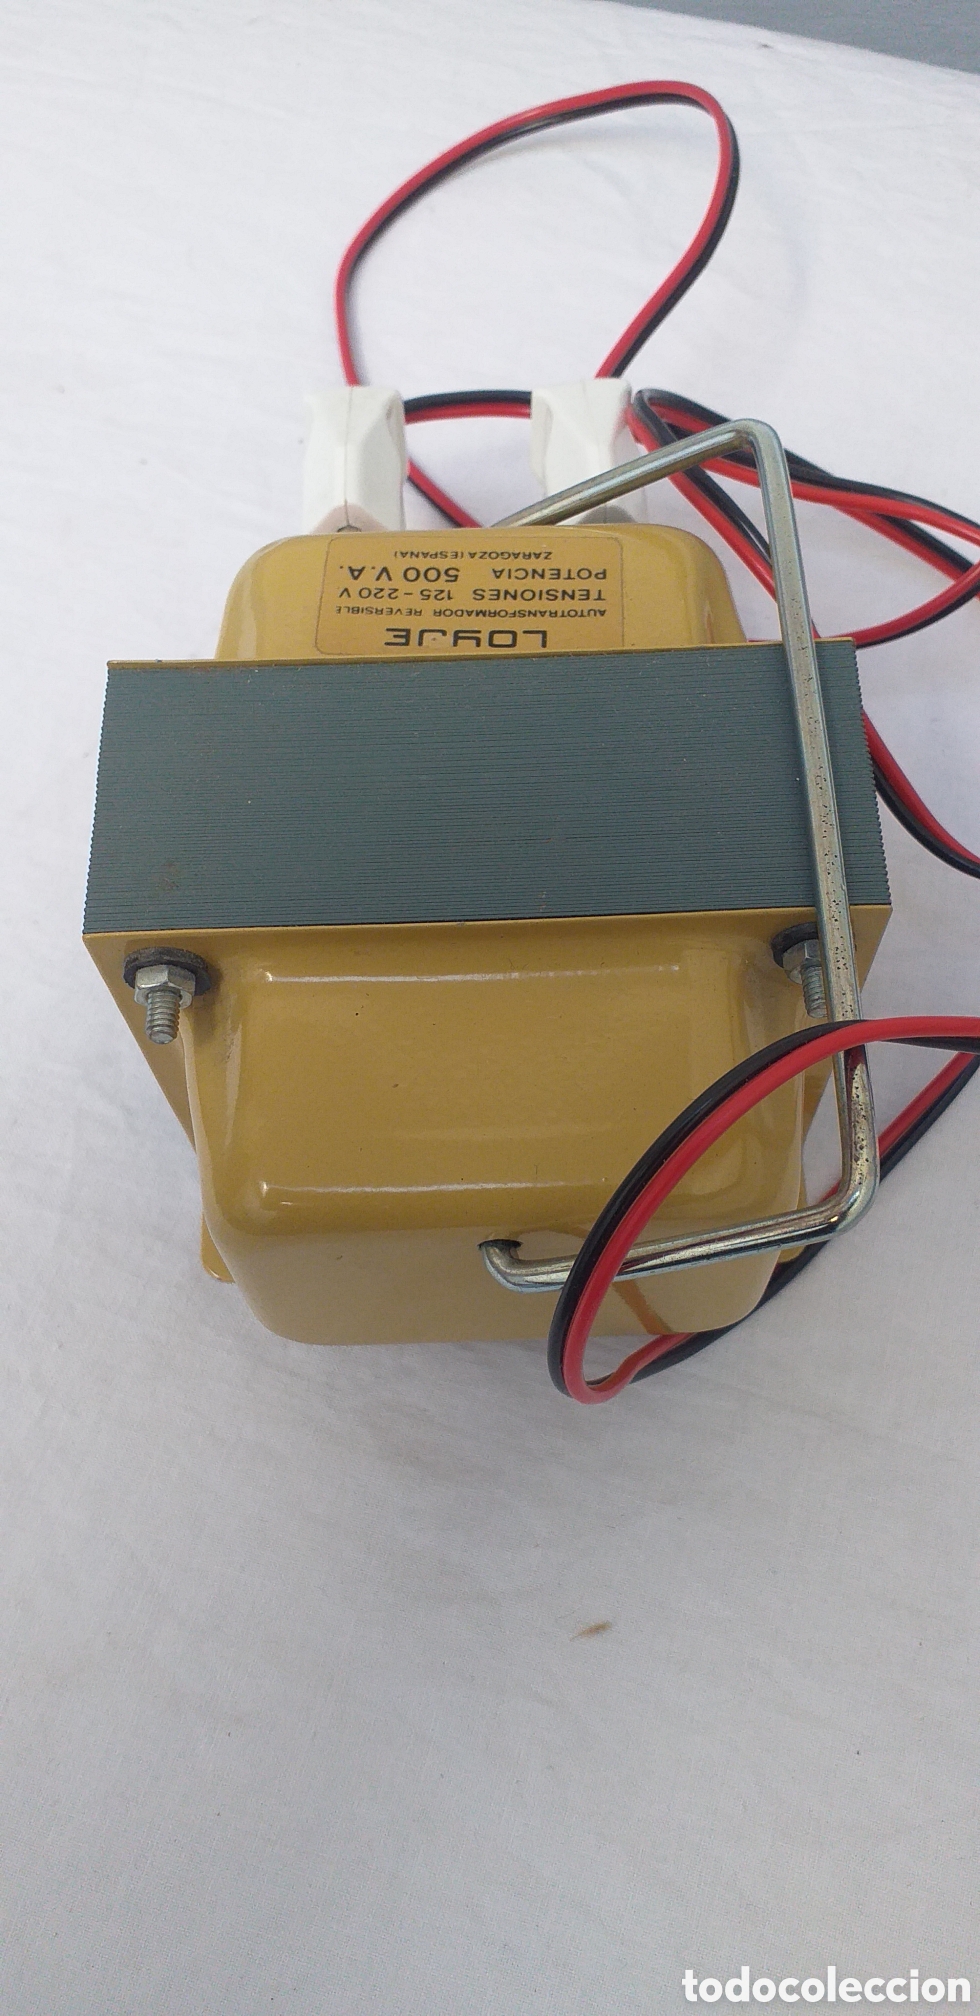 antiguo transformador de luz - 125 v a 220 v - Compra venta en todocoleccion